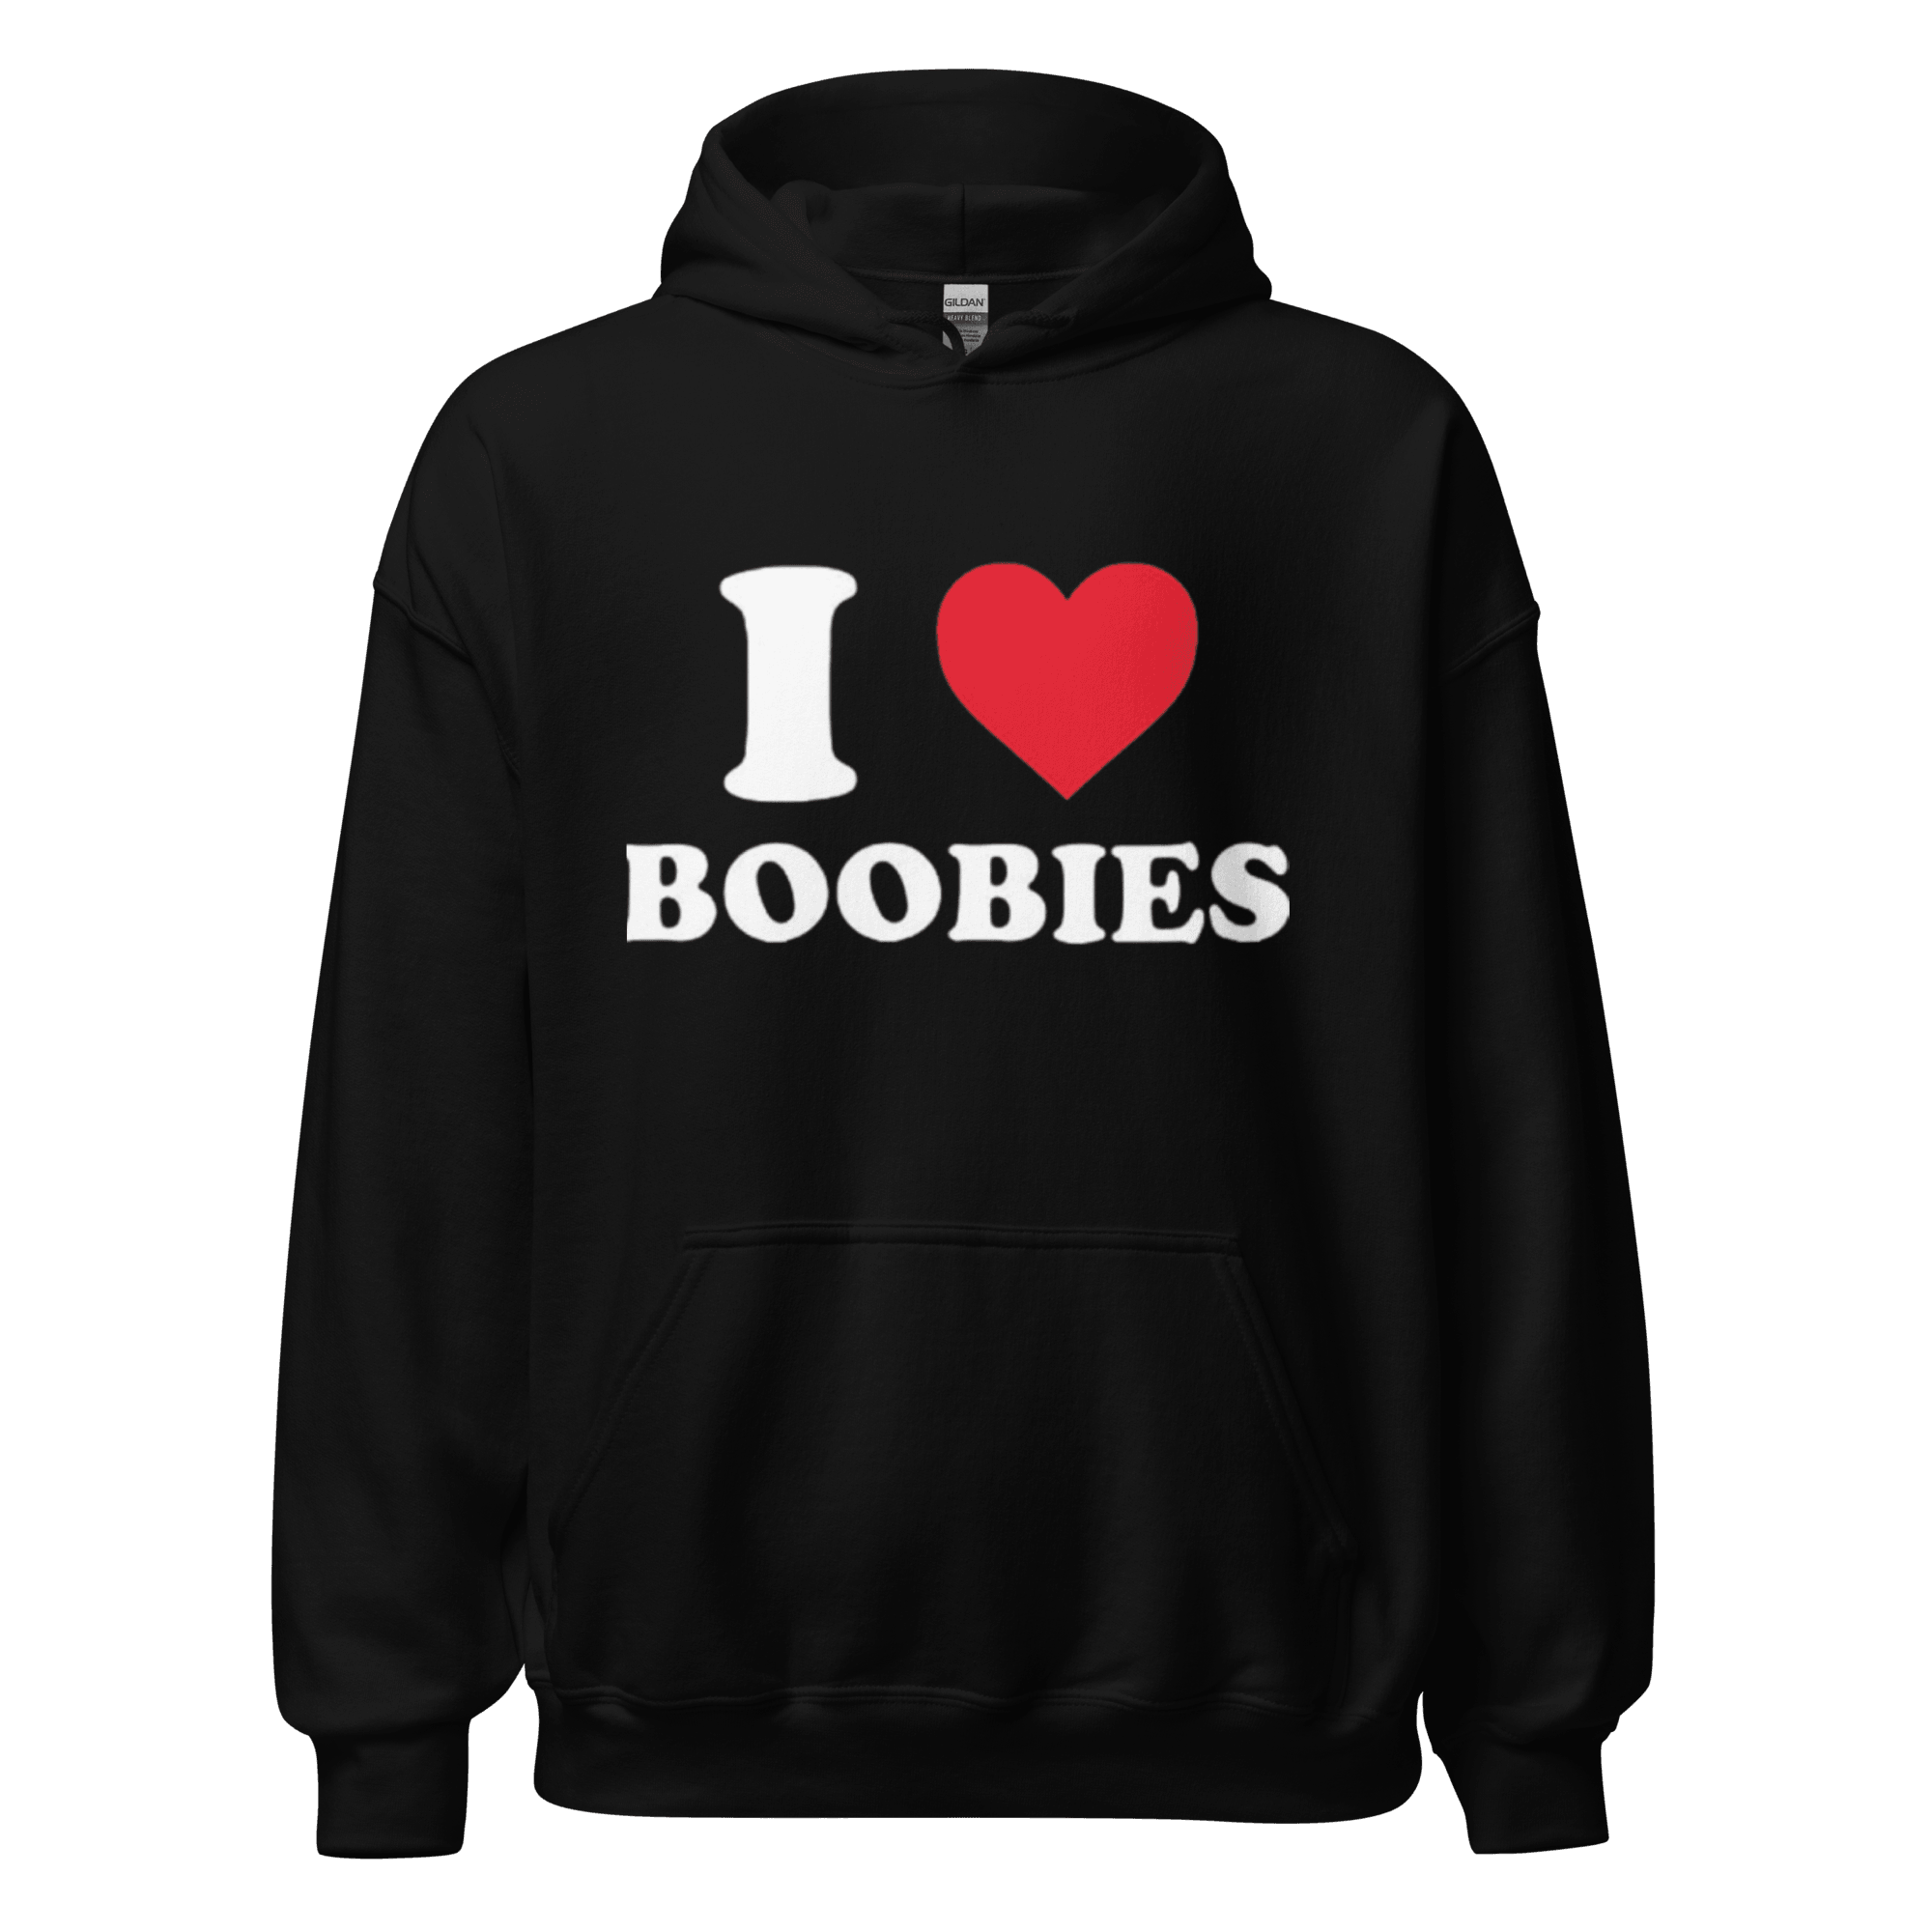 I Love Boobies Top Koala Blended Cotton Unisex Soft Style Pullover